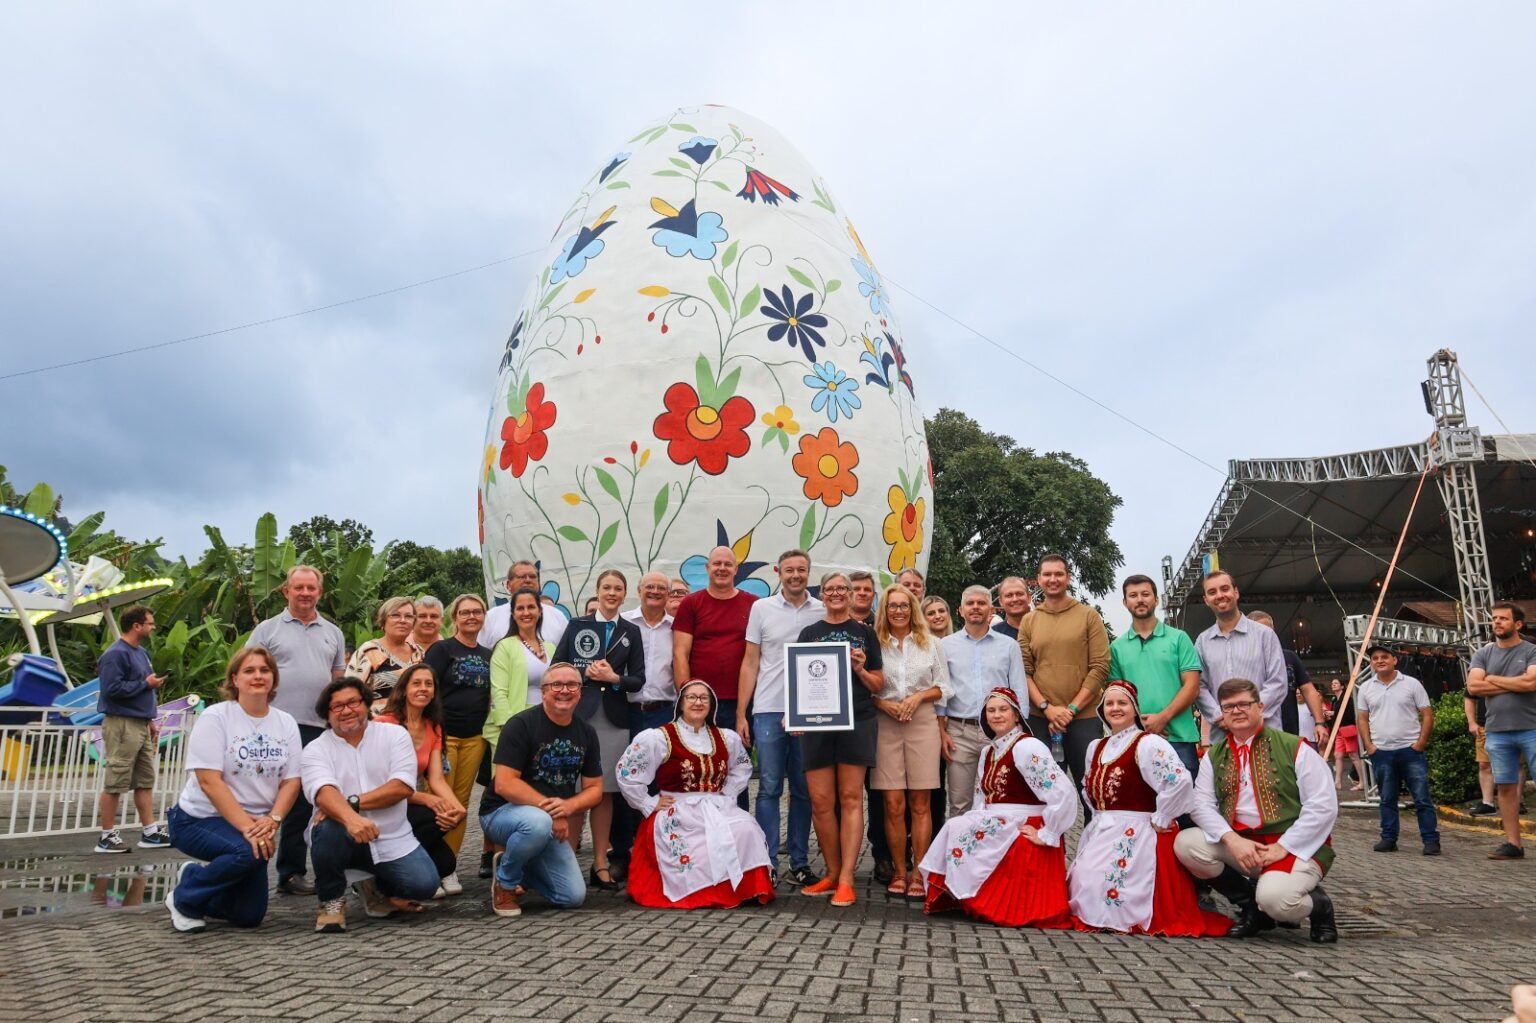 Placa do Guiness World Records reconhece ovo de Páscoa gigante na cidade de Pomerode, em Santa Catarina. (Fonte: Jornal do Comércio/Reprodução)